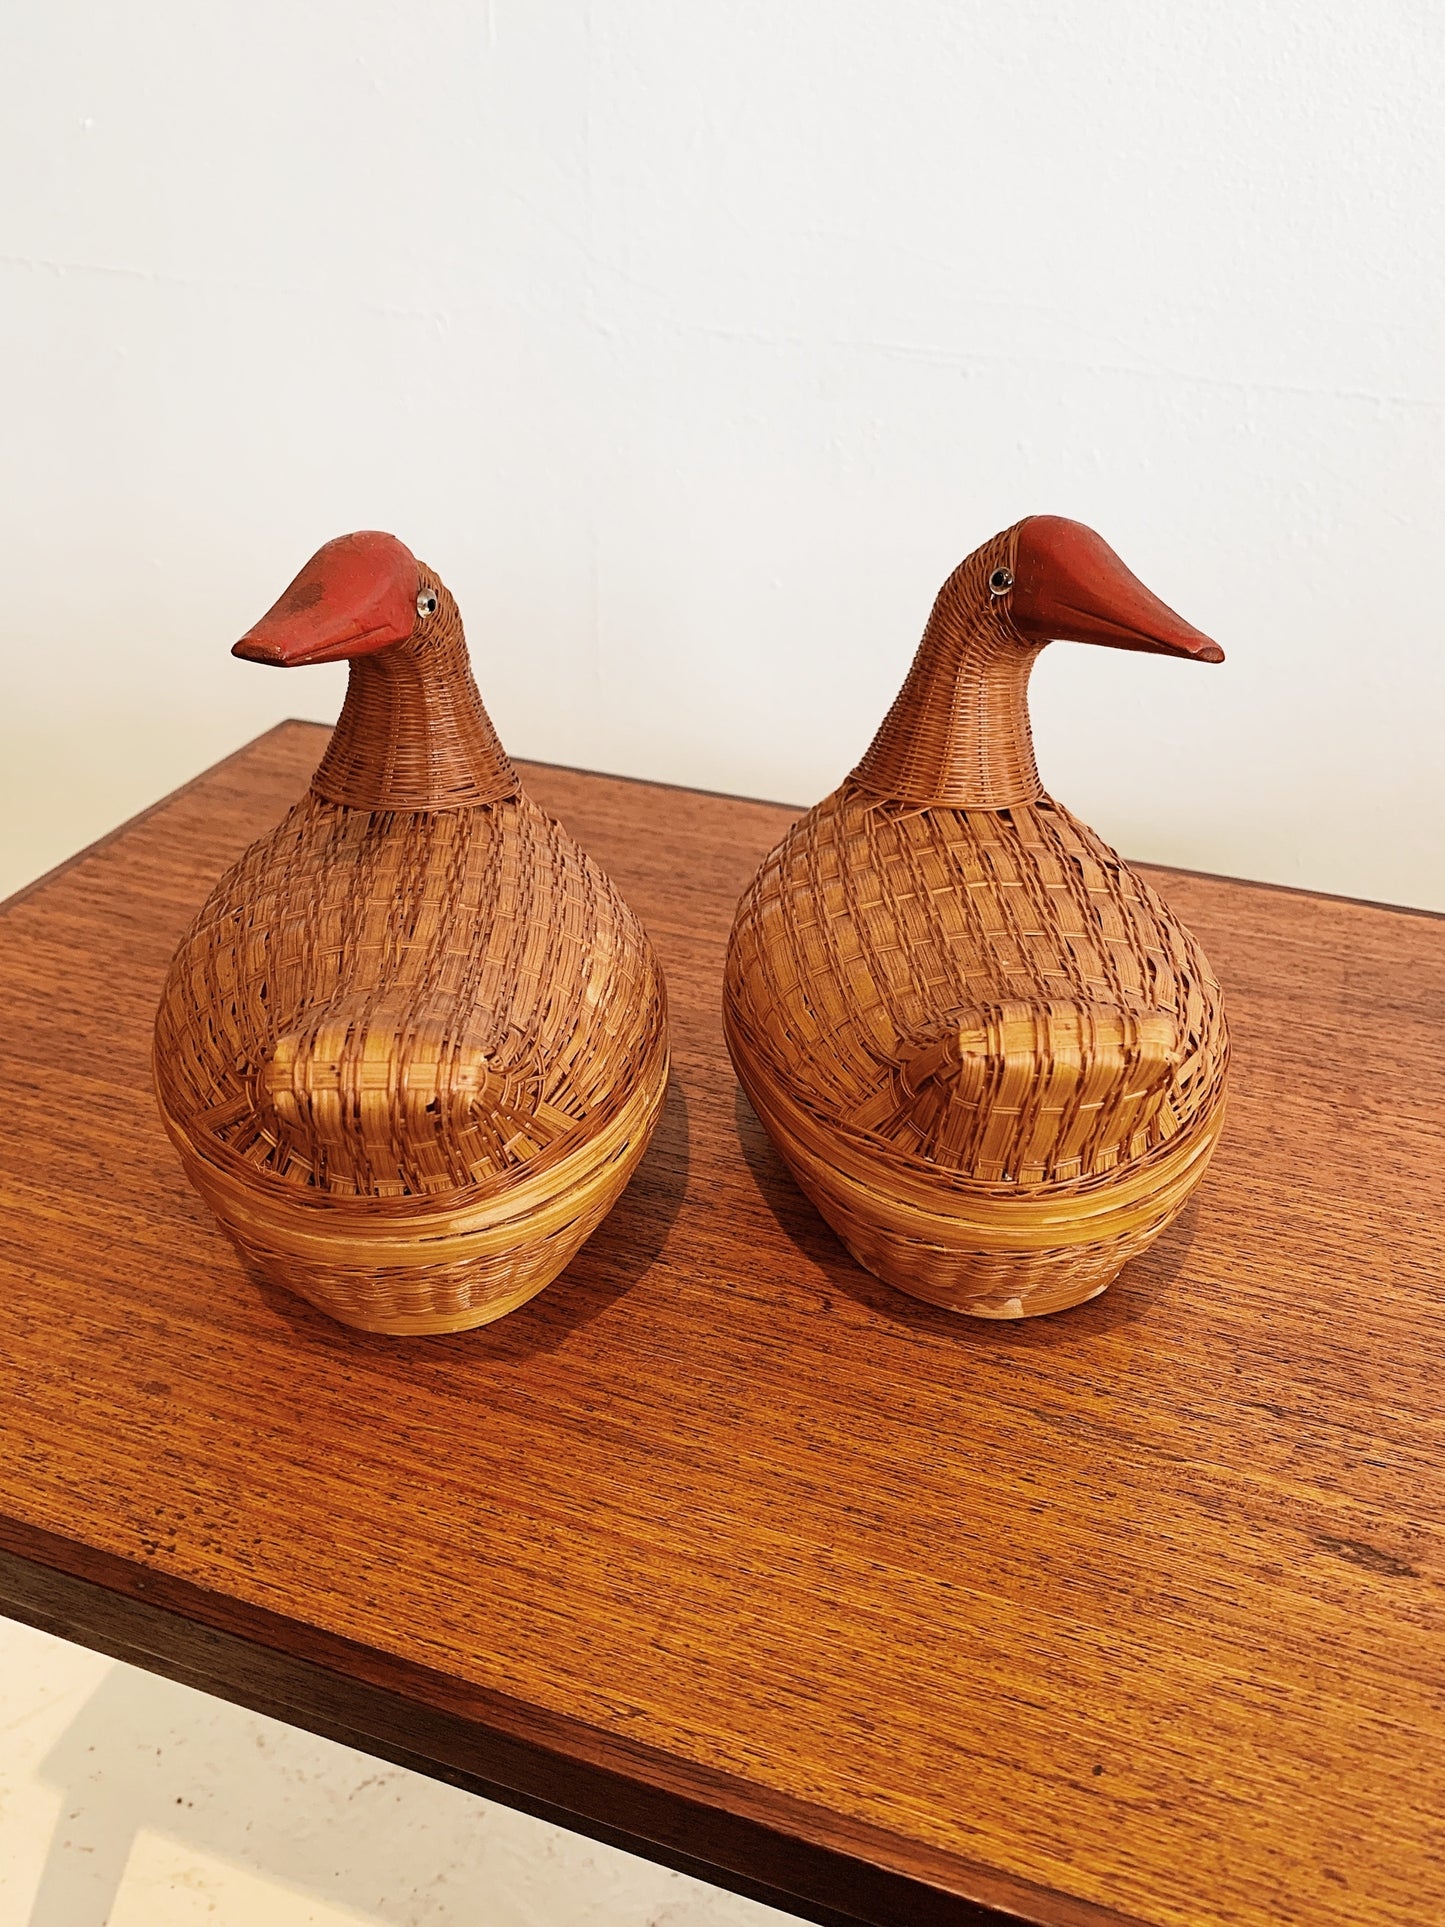 Vintage Wicker "Basket Case" Ducks (set of three)